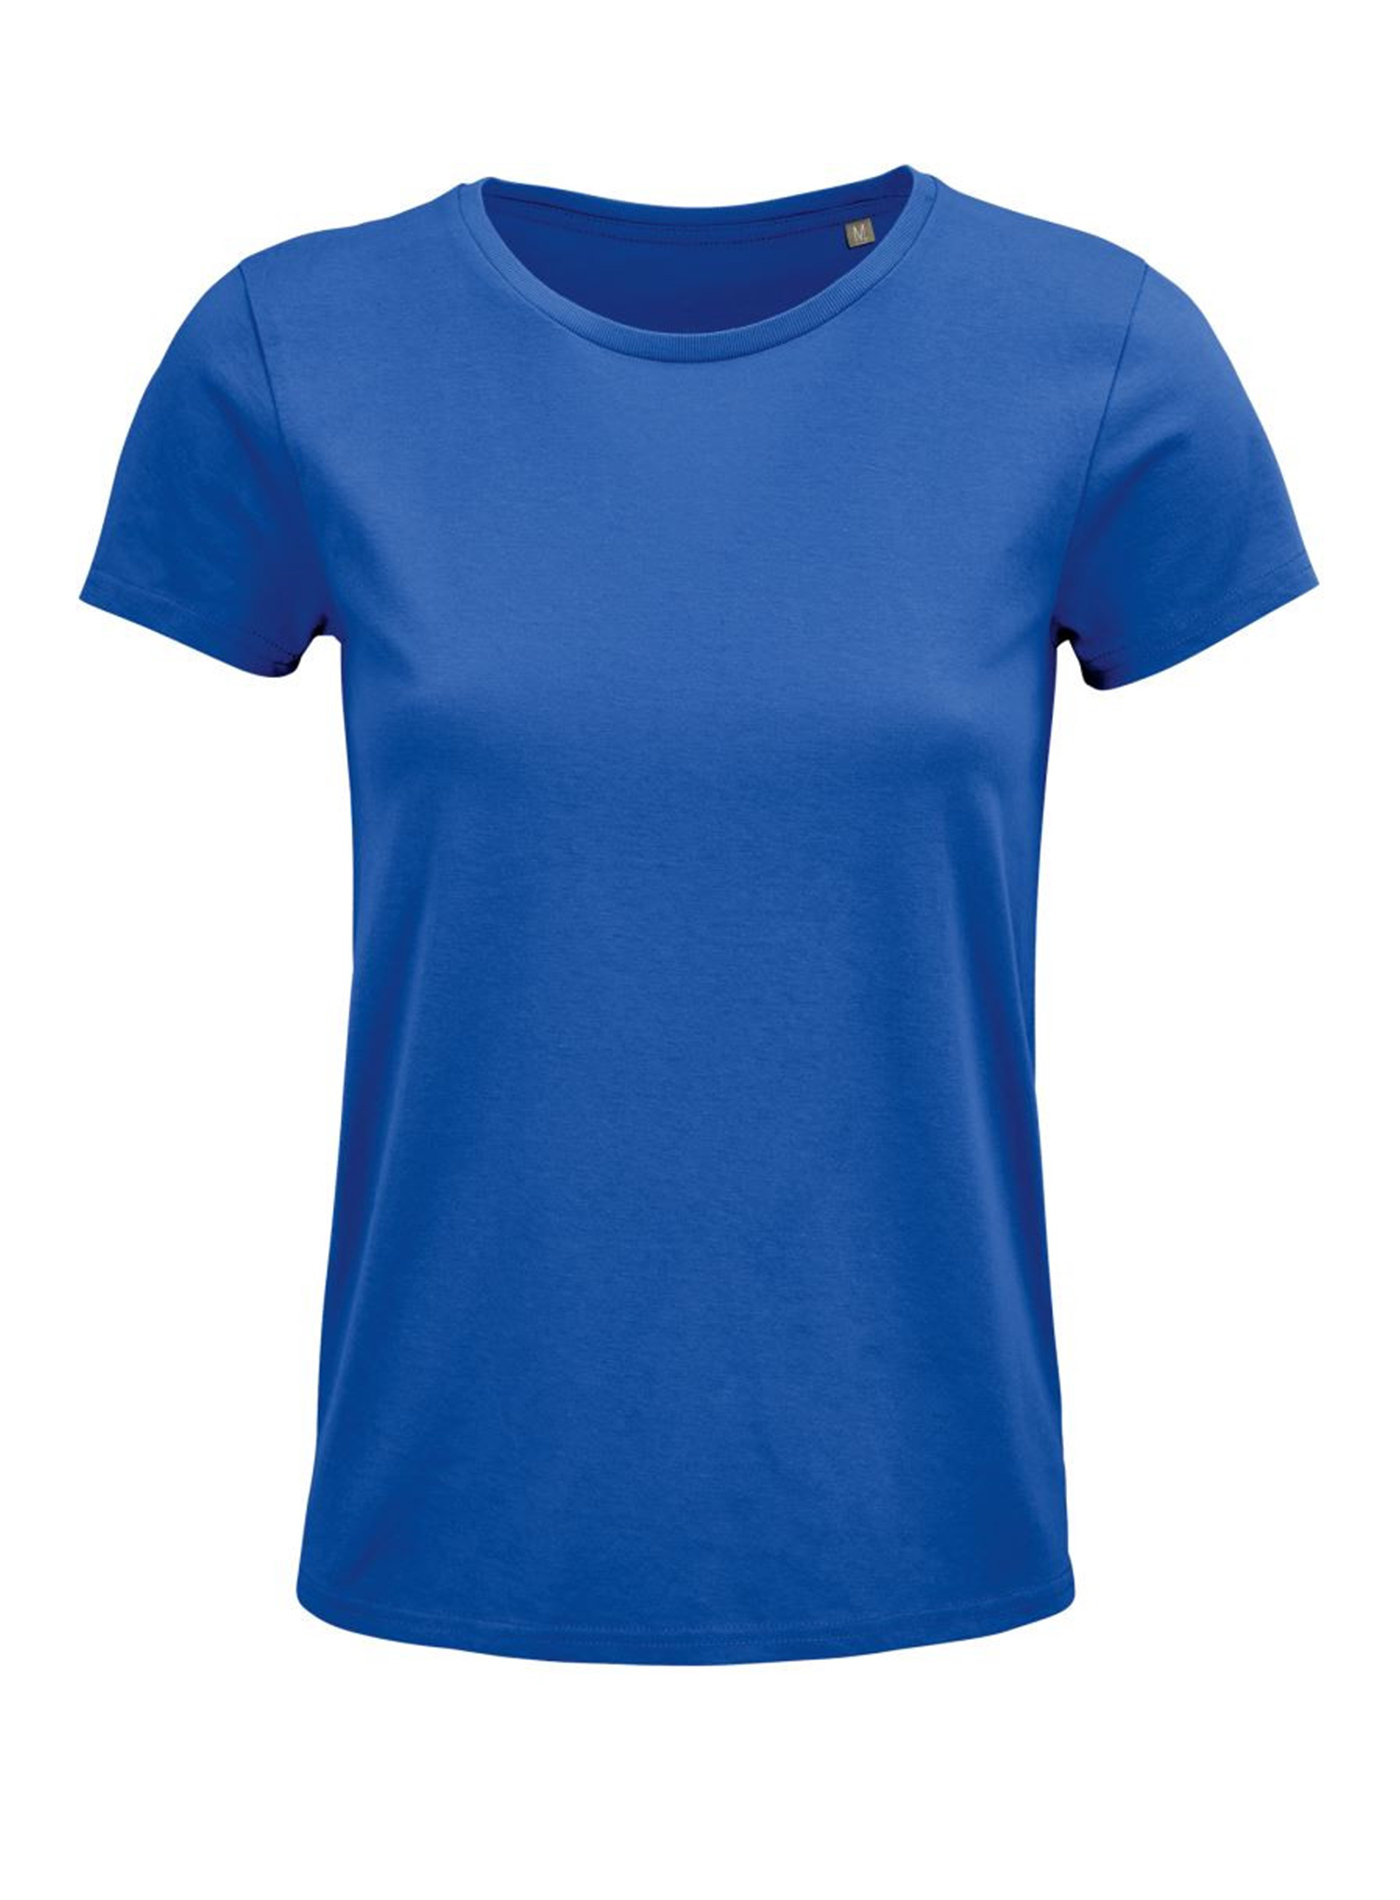 Dámské tričko SOL'S Crusader - královská modrá XL